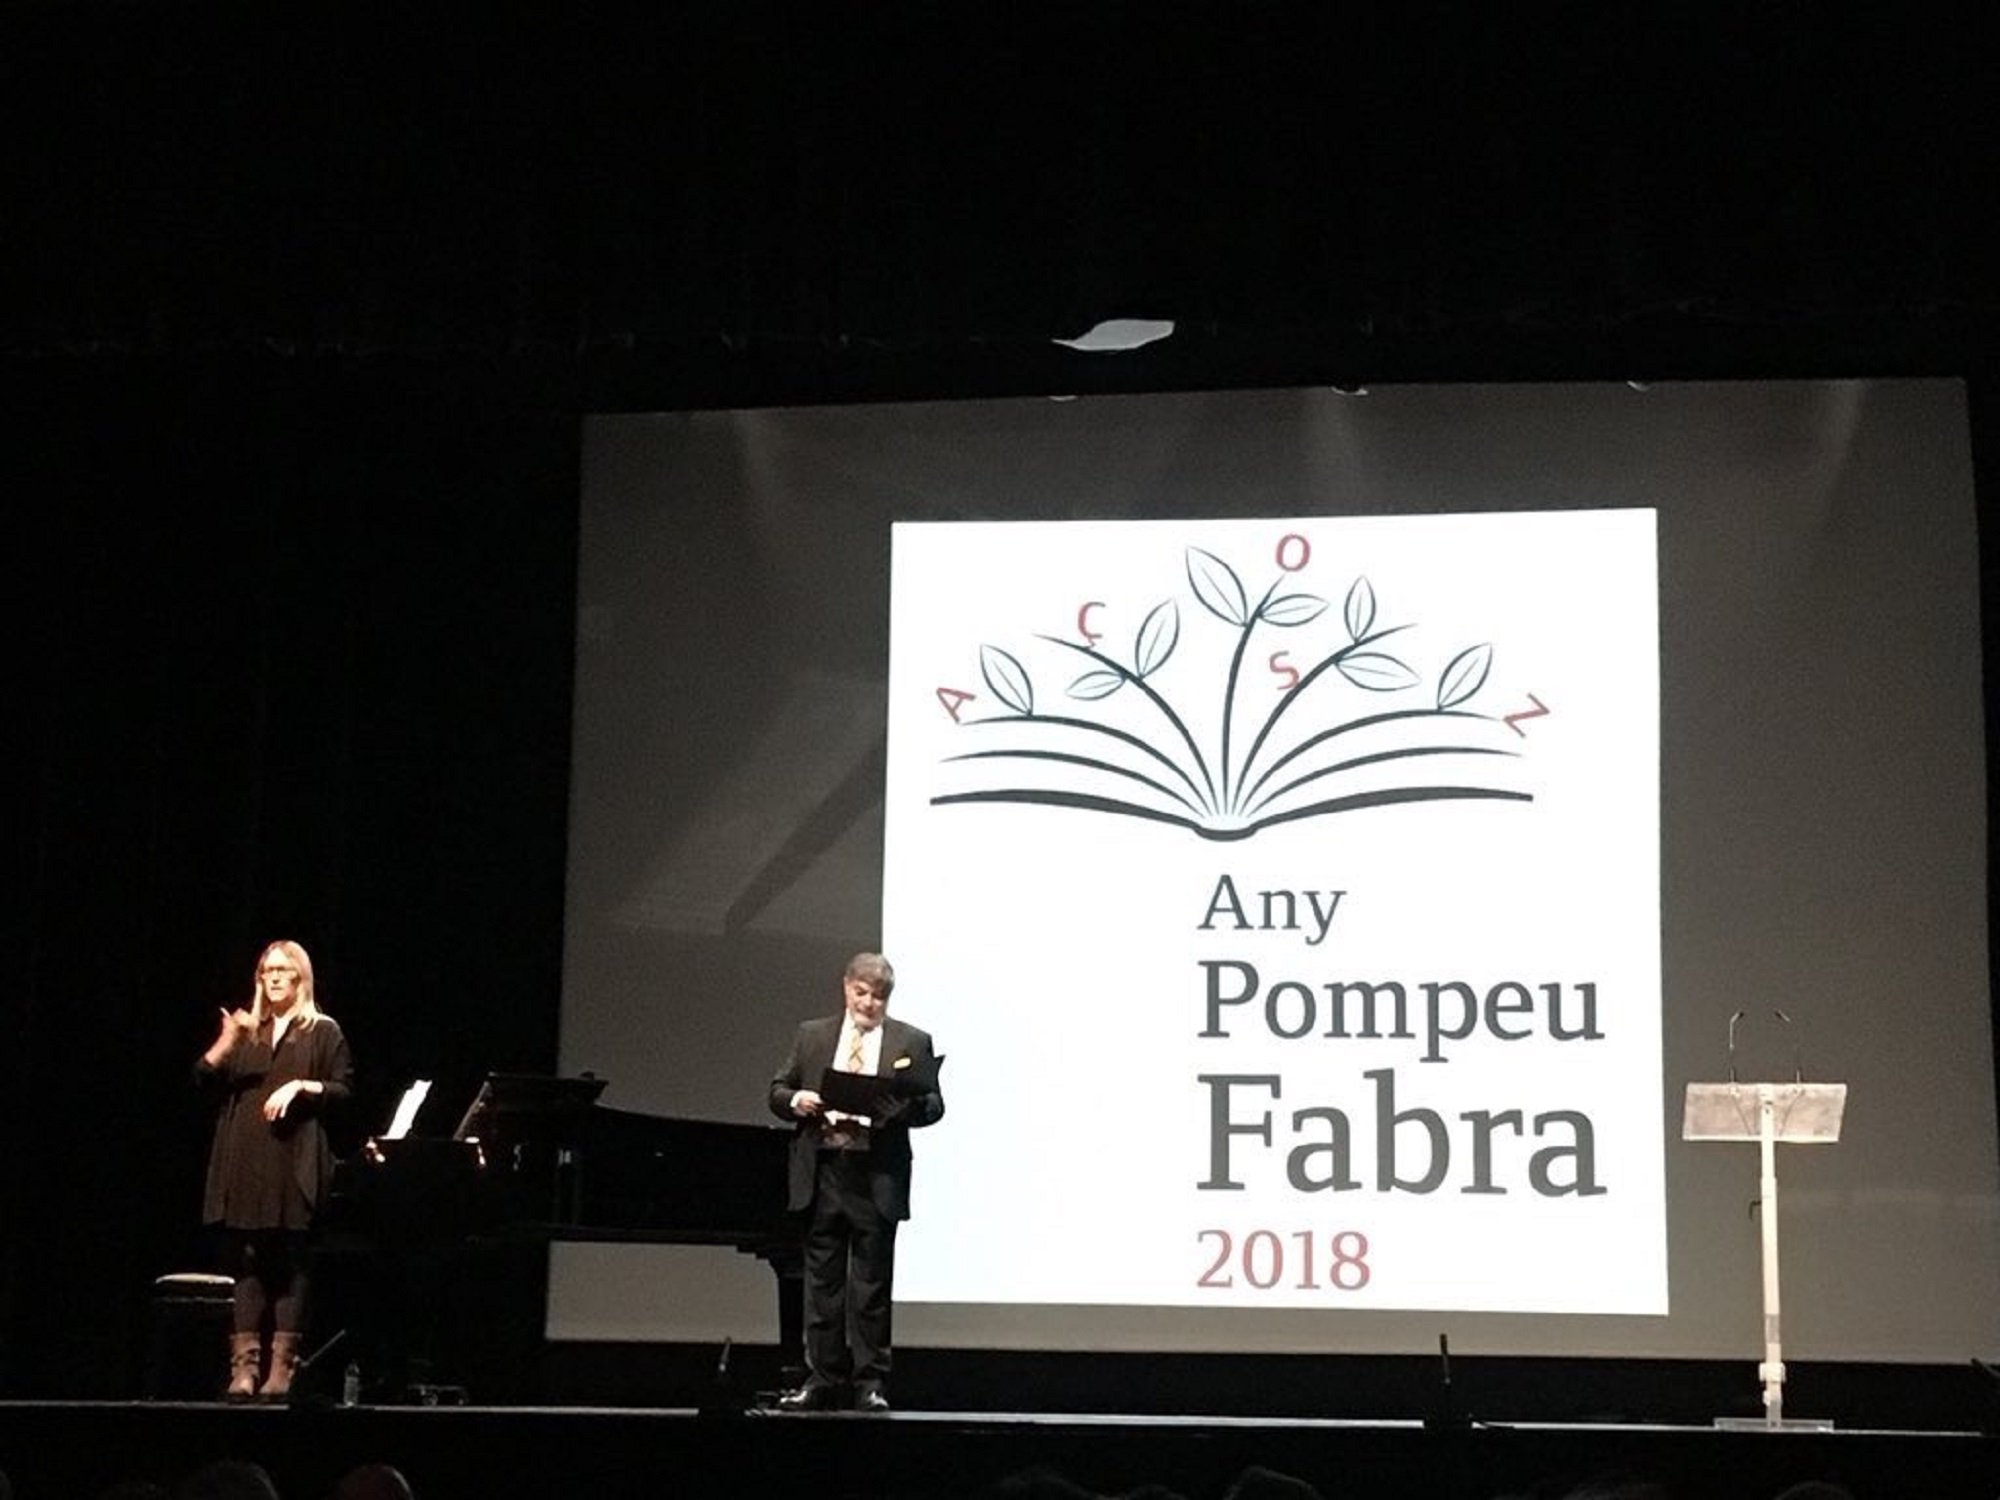 Acto inaugural del año Pompeu Fabra en Badalona